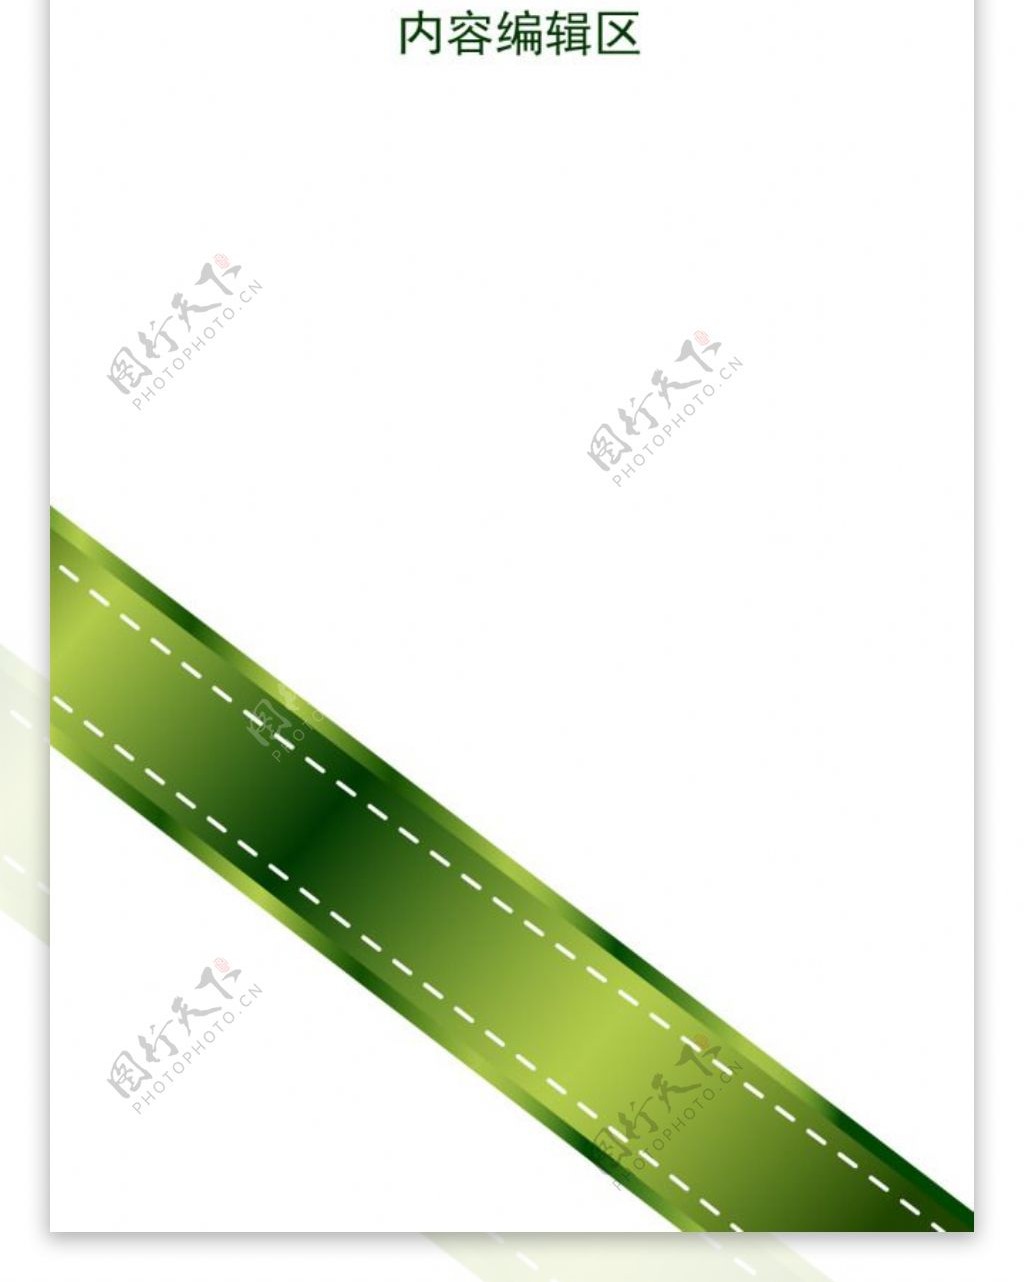 绿色中国结展架设计模板海报素材画面元素